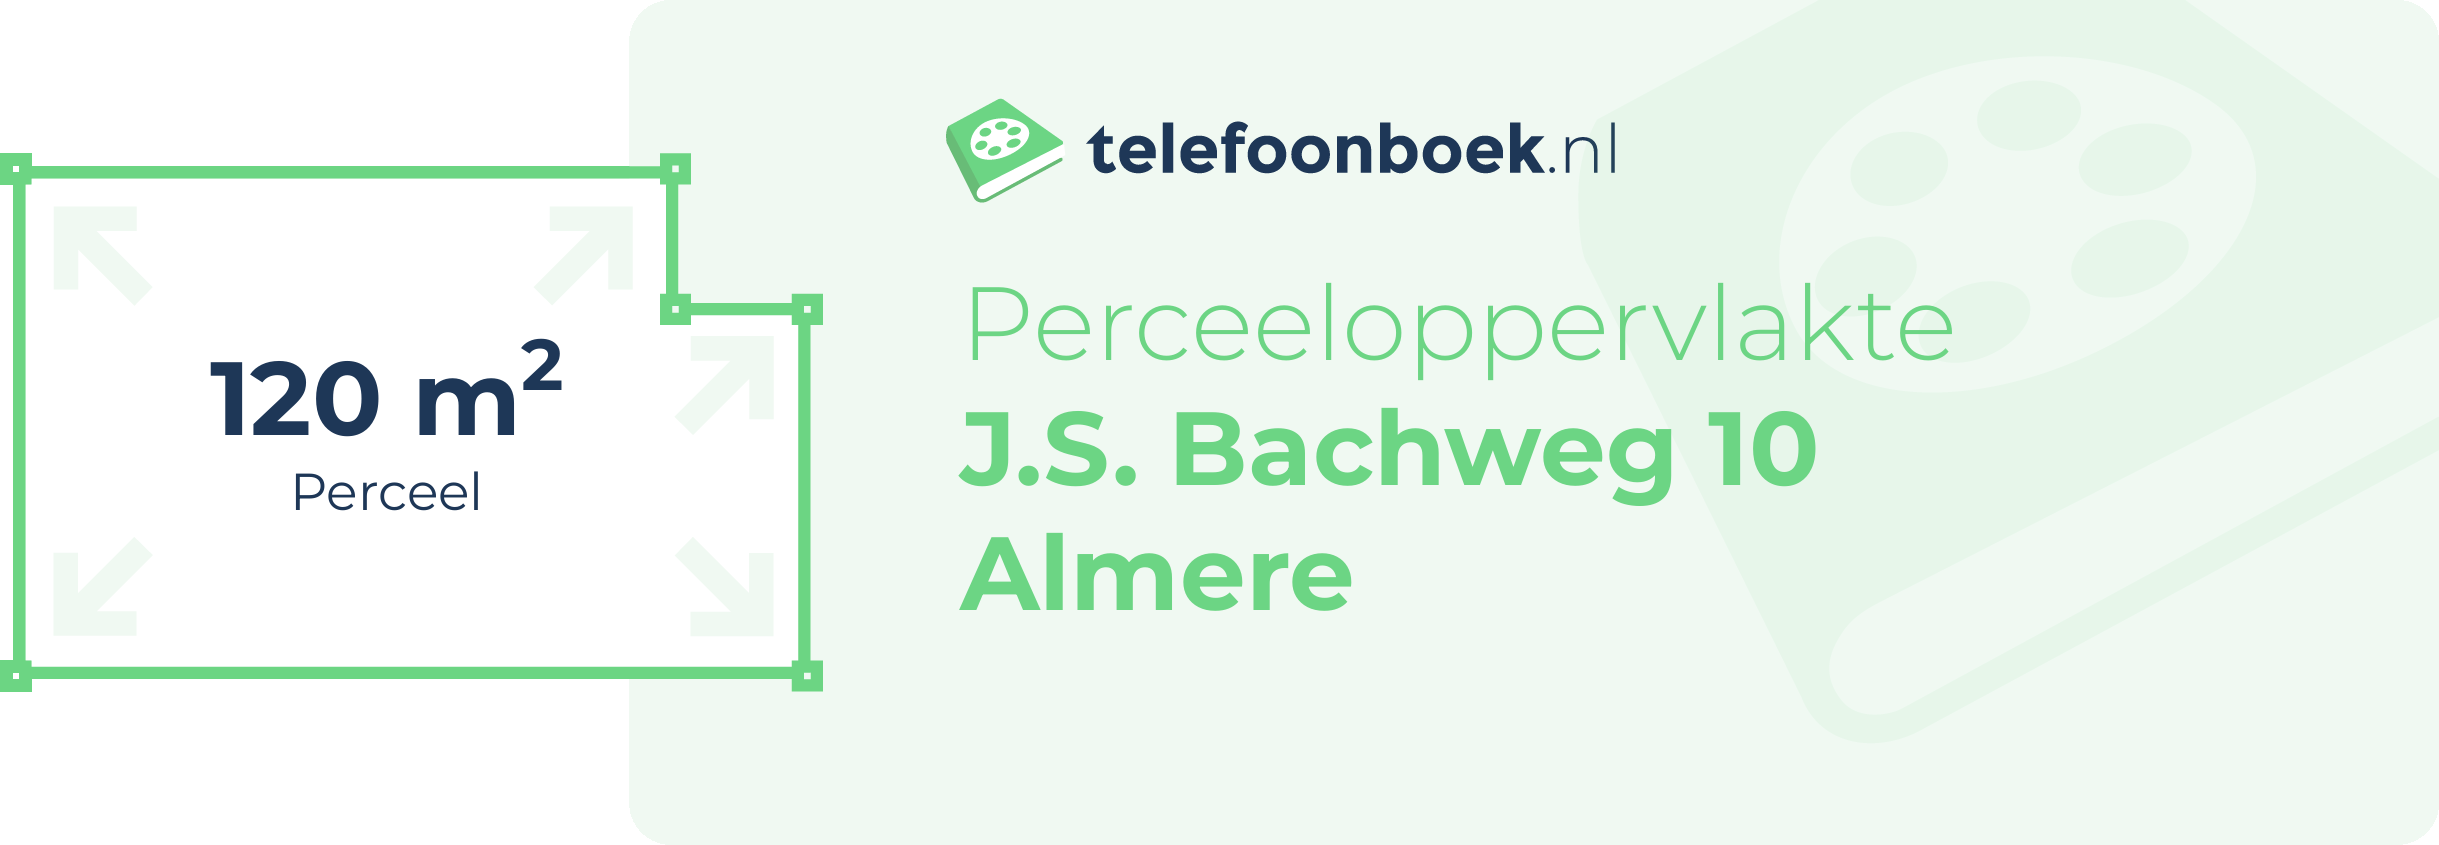 Perceeloppervlakte J.S. Bachweg 10 Almere